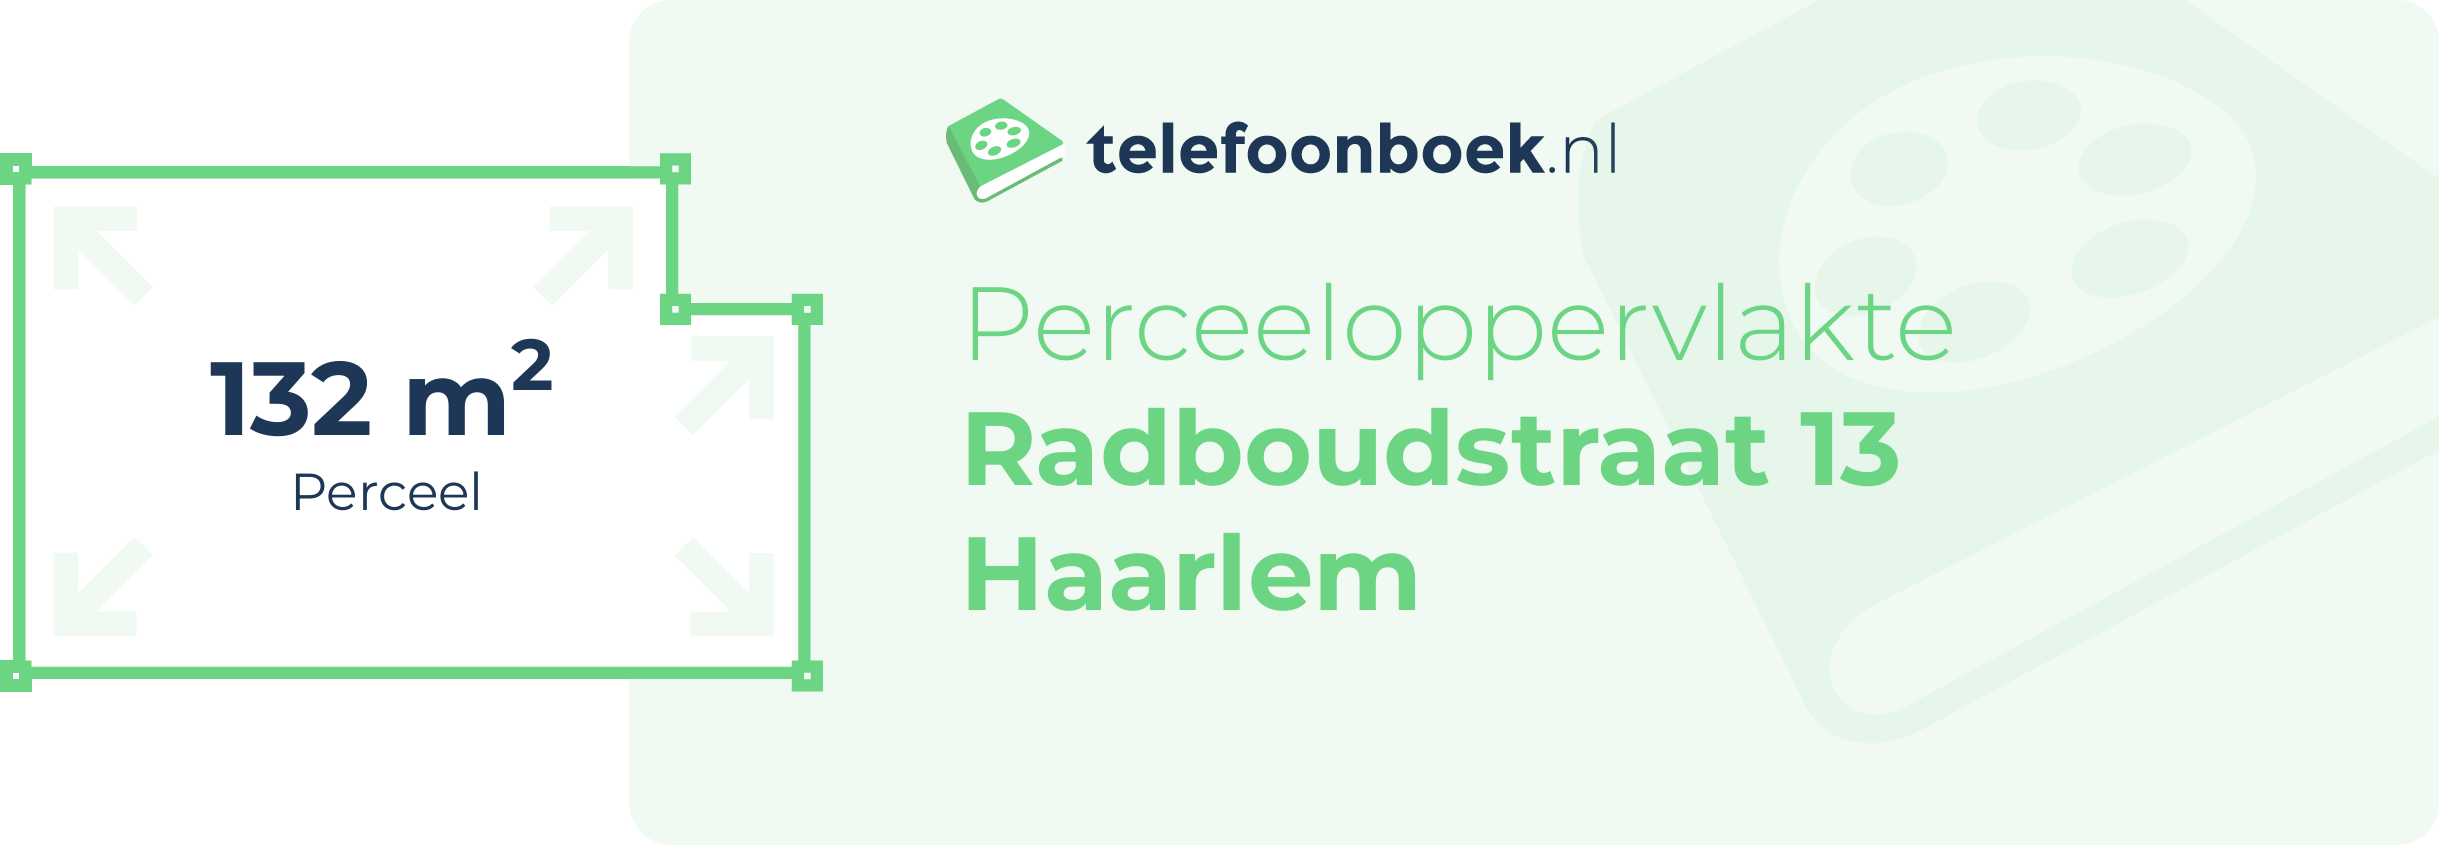 Perceeloppervlakte Radboudstraat 13 Haarlem